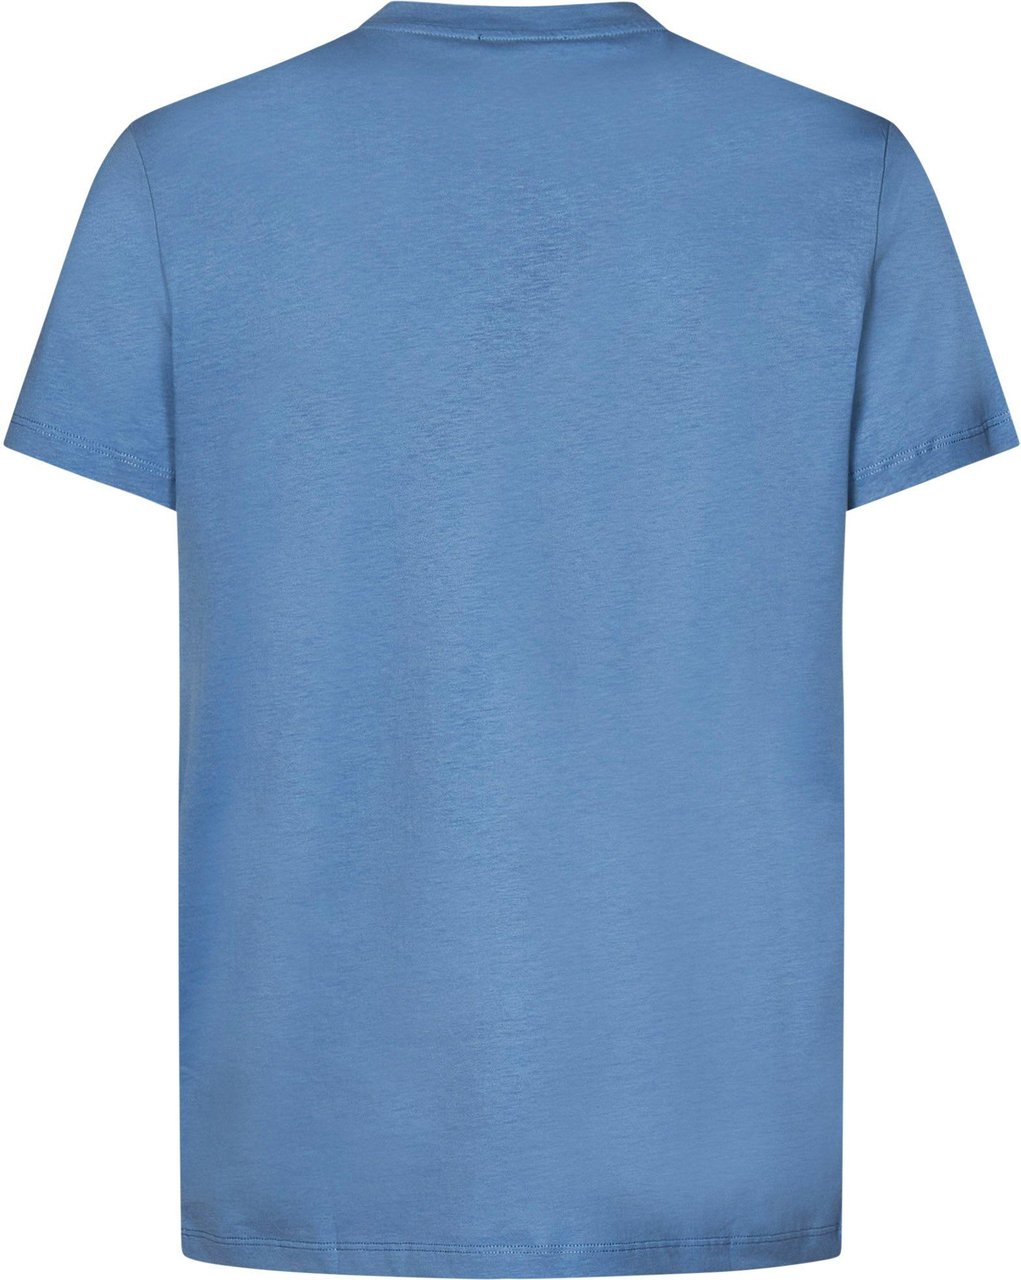 Balmain Balmain T-shirts and Polos Clear Blue Blauw